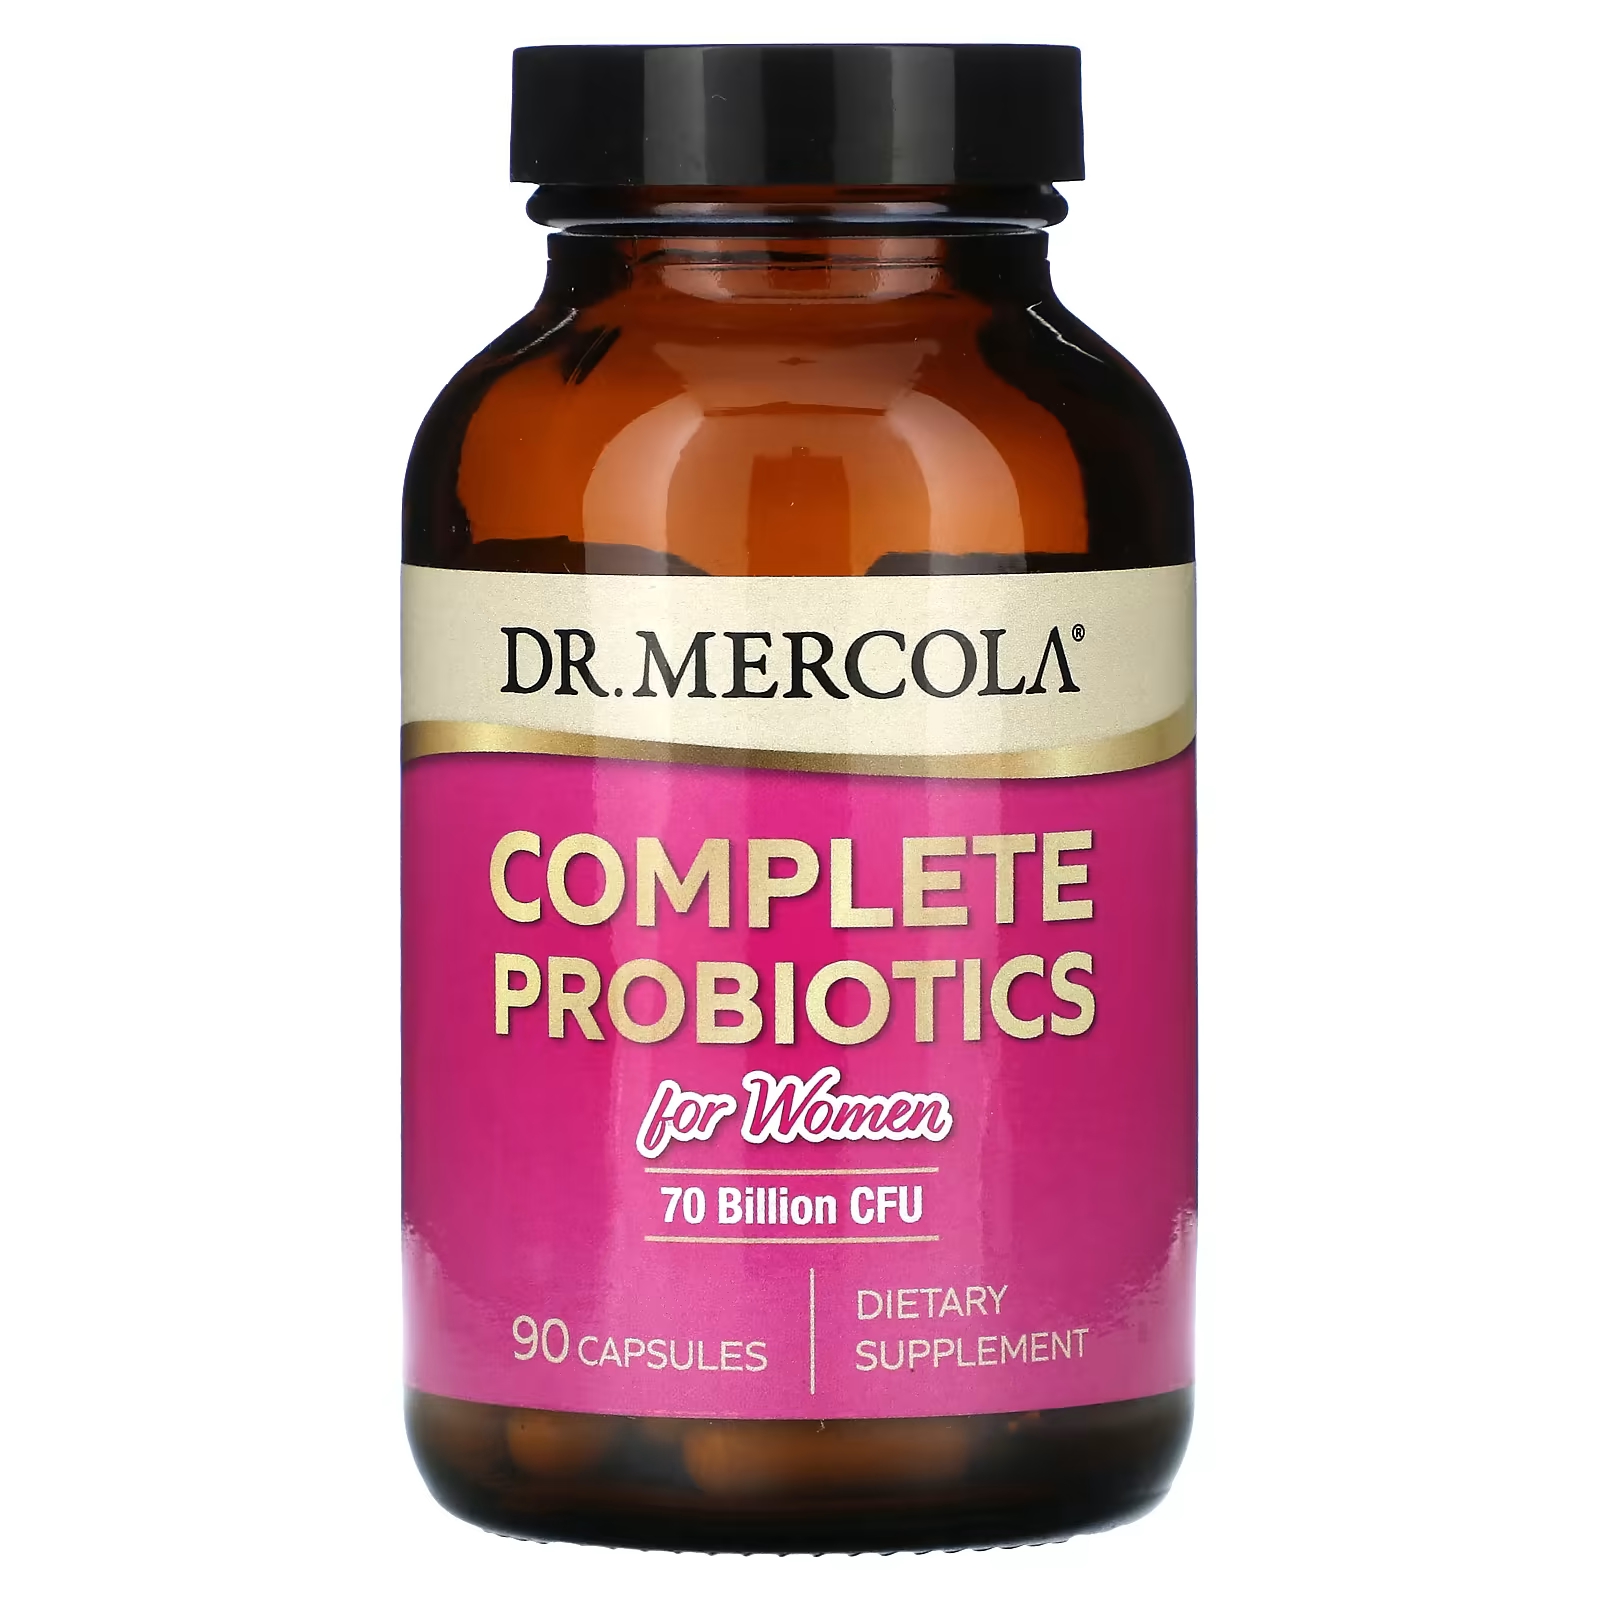 Комплексные пробиотики Dr. Mercola для женщин, 70 миллиардов КОЕ, 90 капсул dr mercola комплексные пробиотики 70 млрд кое 90 капсул